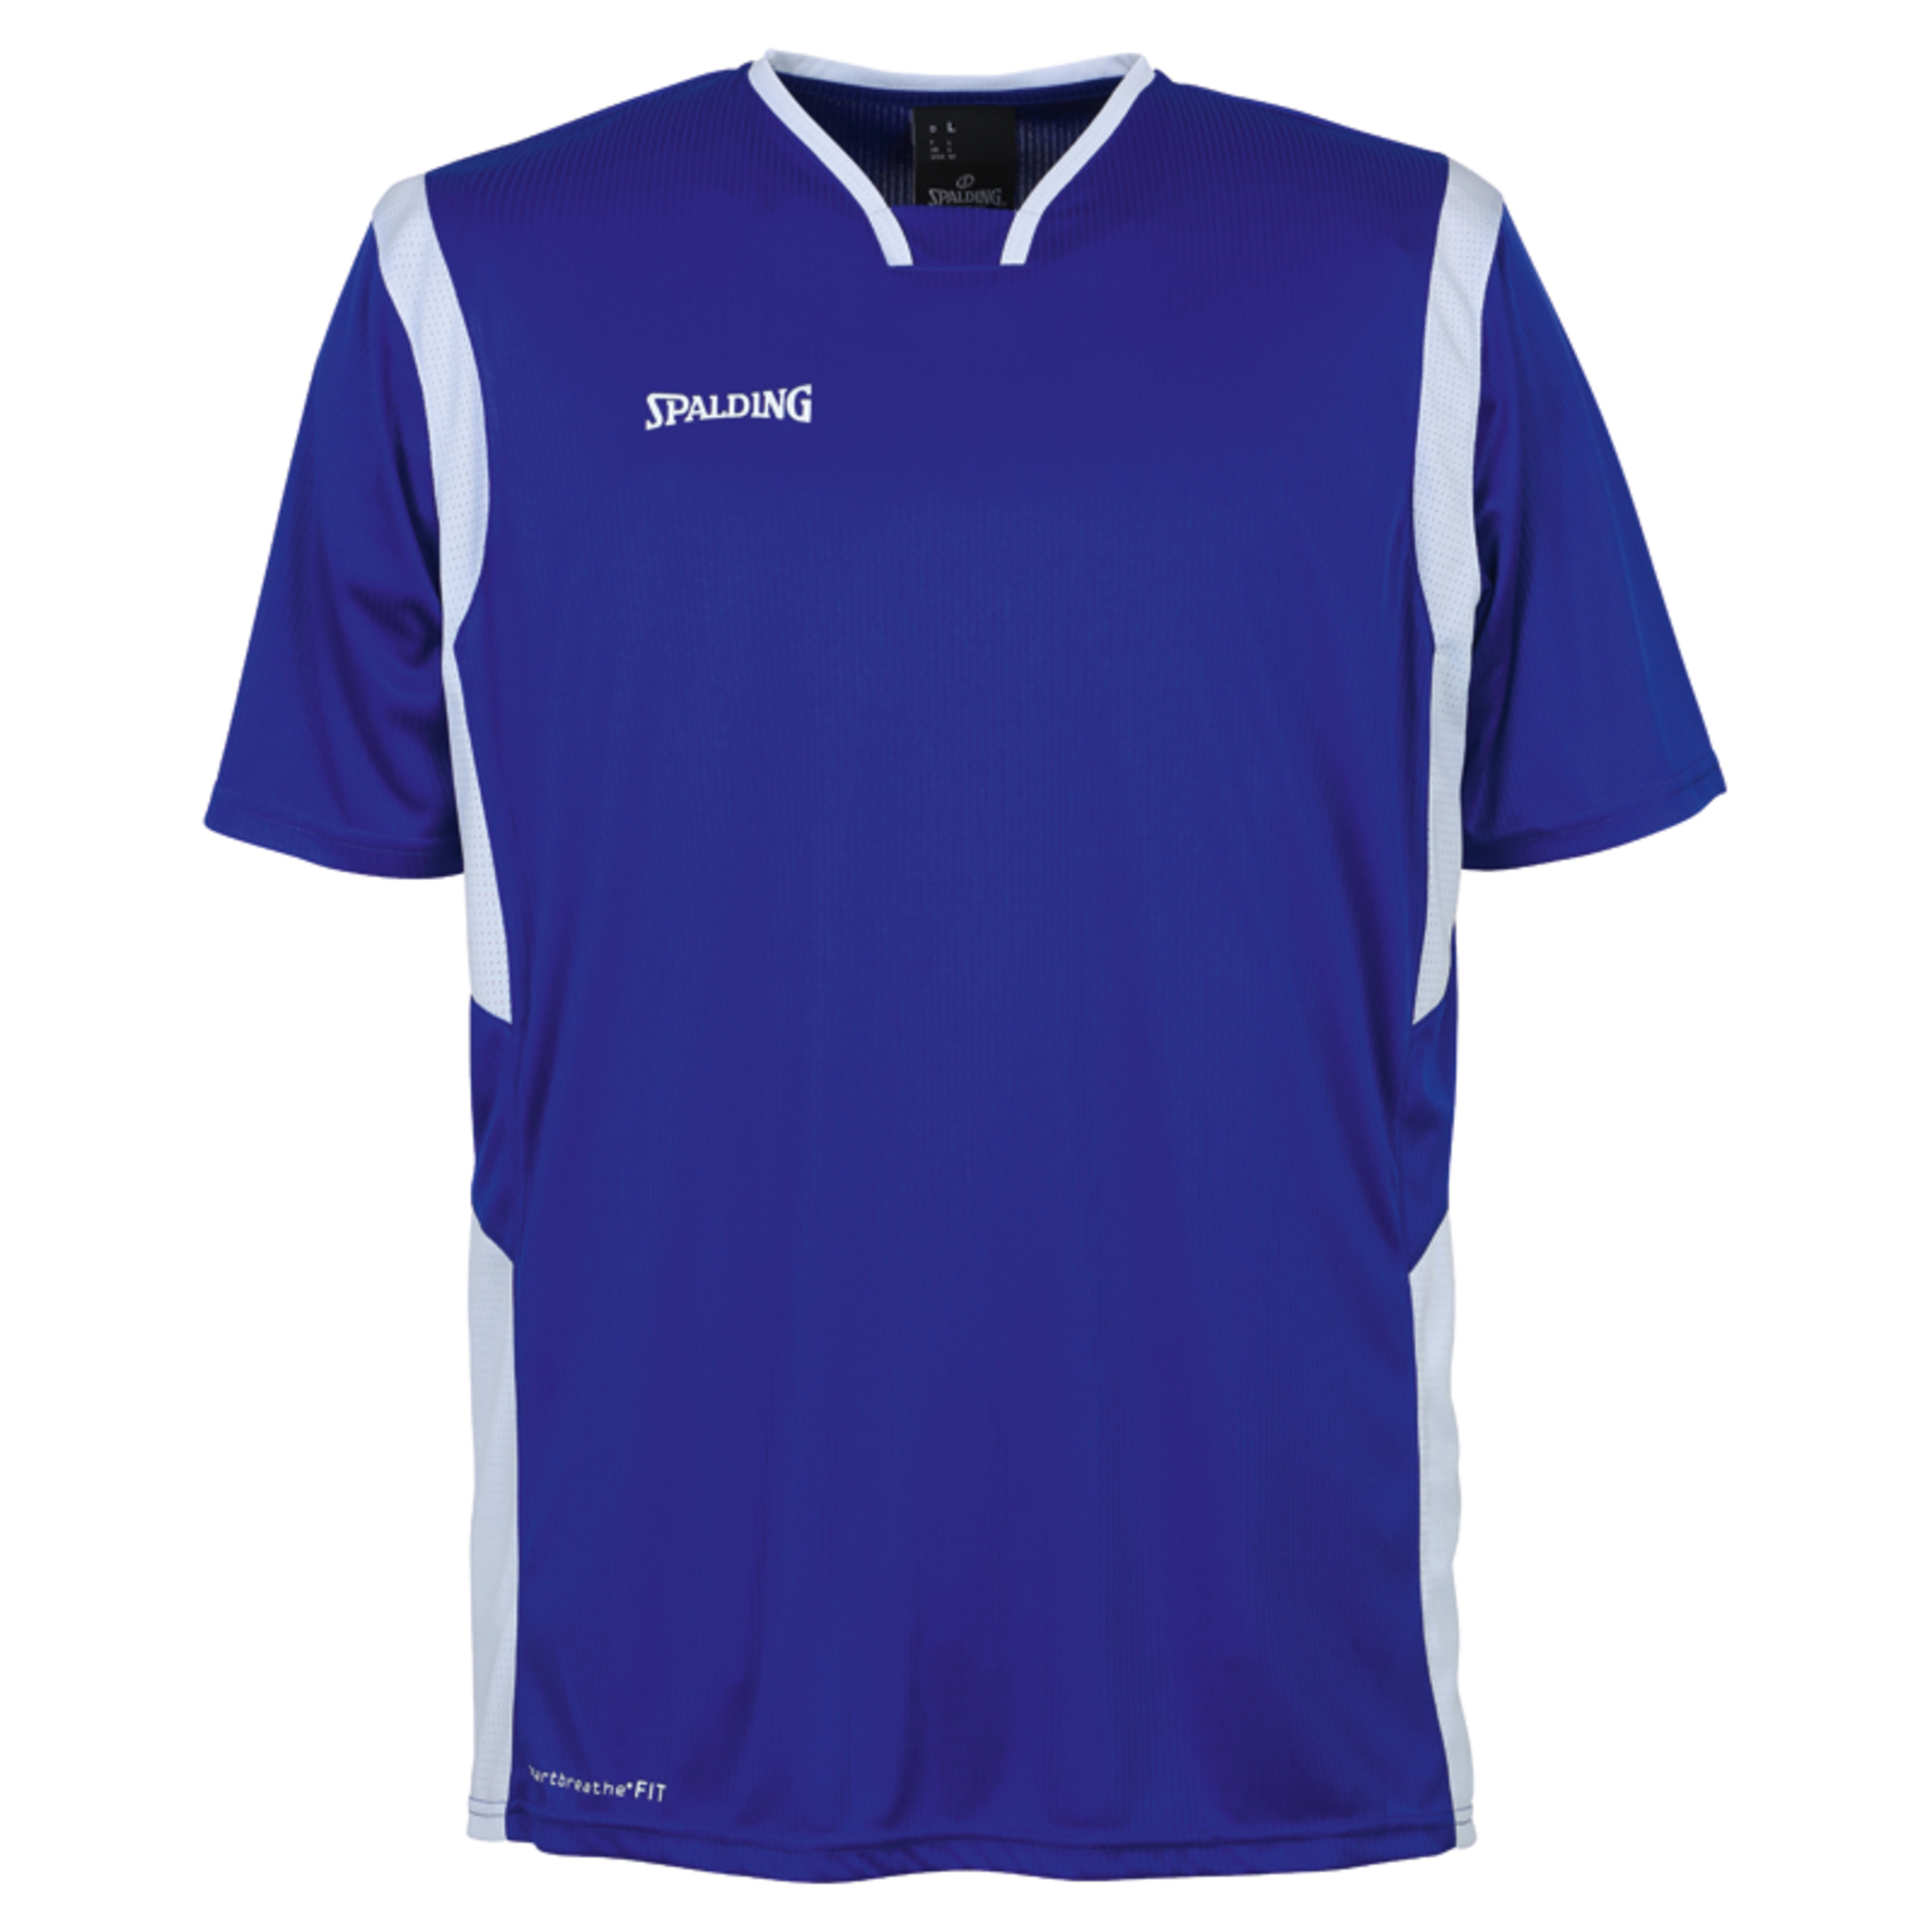 All Star Shooting Shirt Azul Royal/blanco Spalding - azul - 